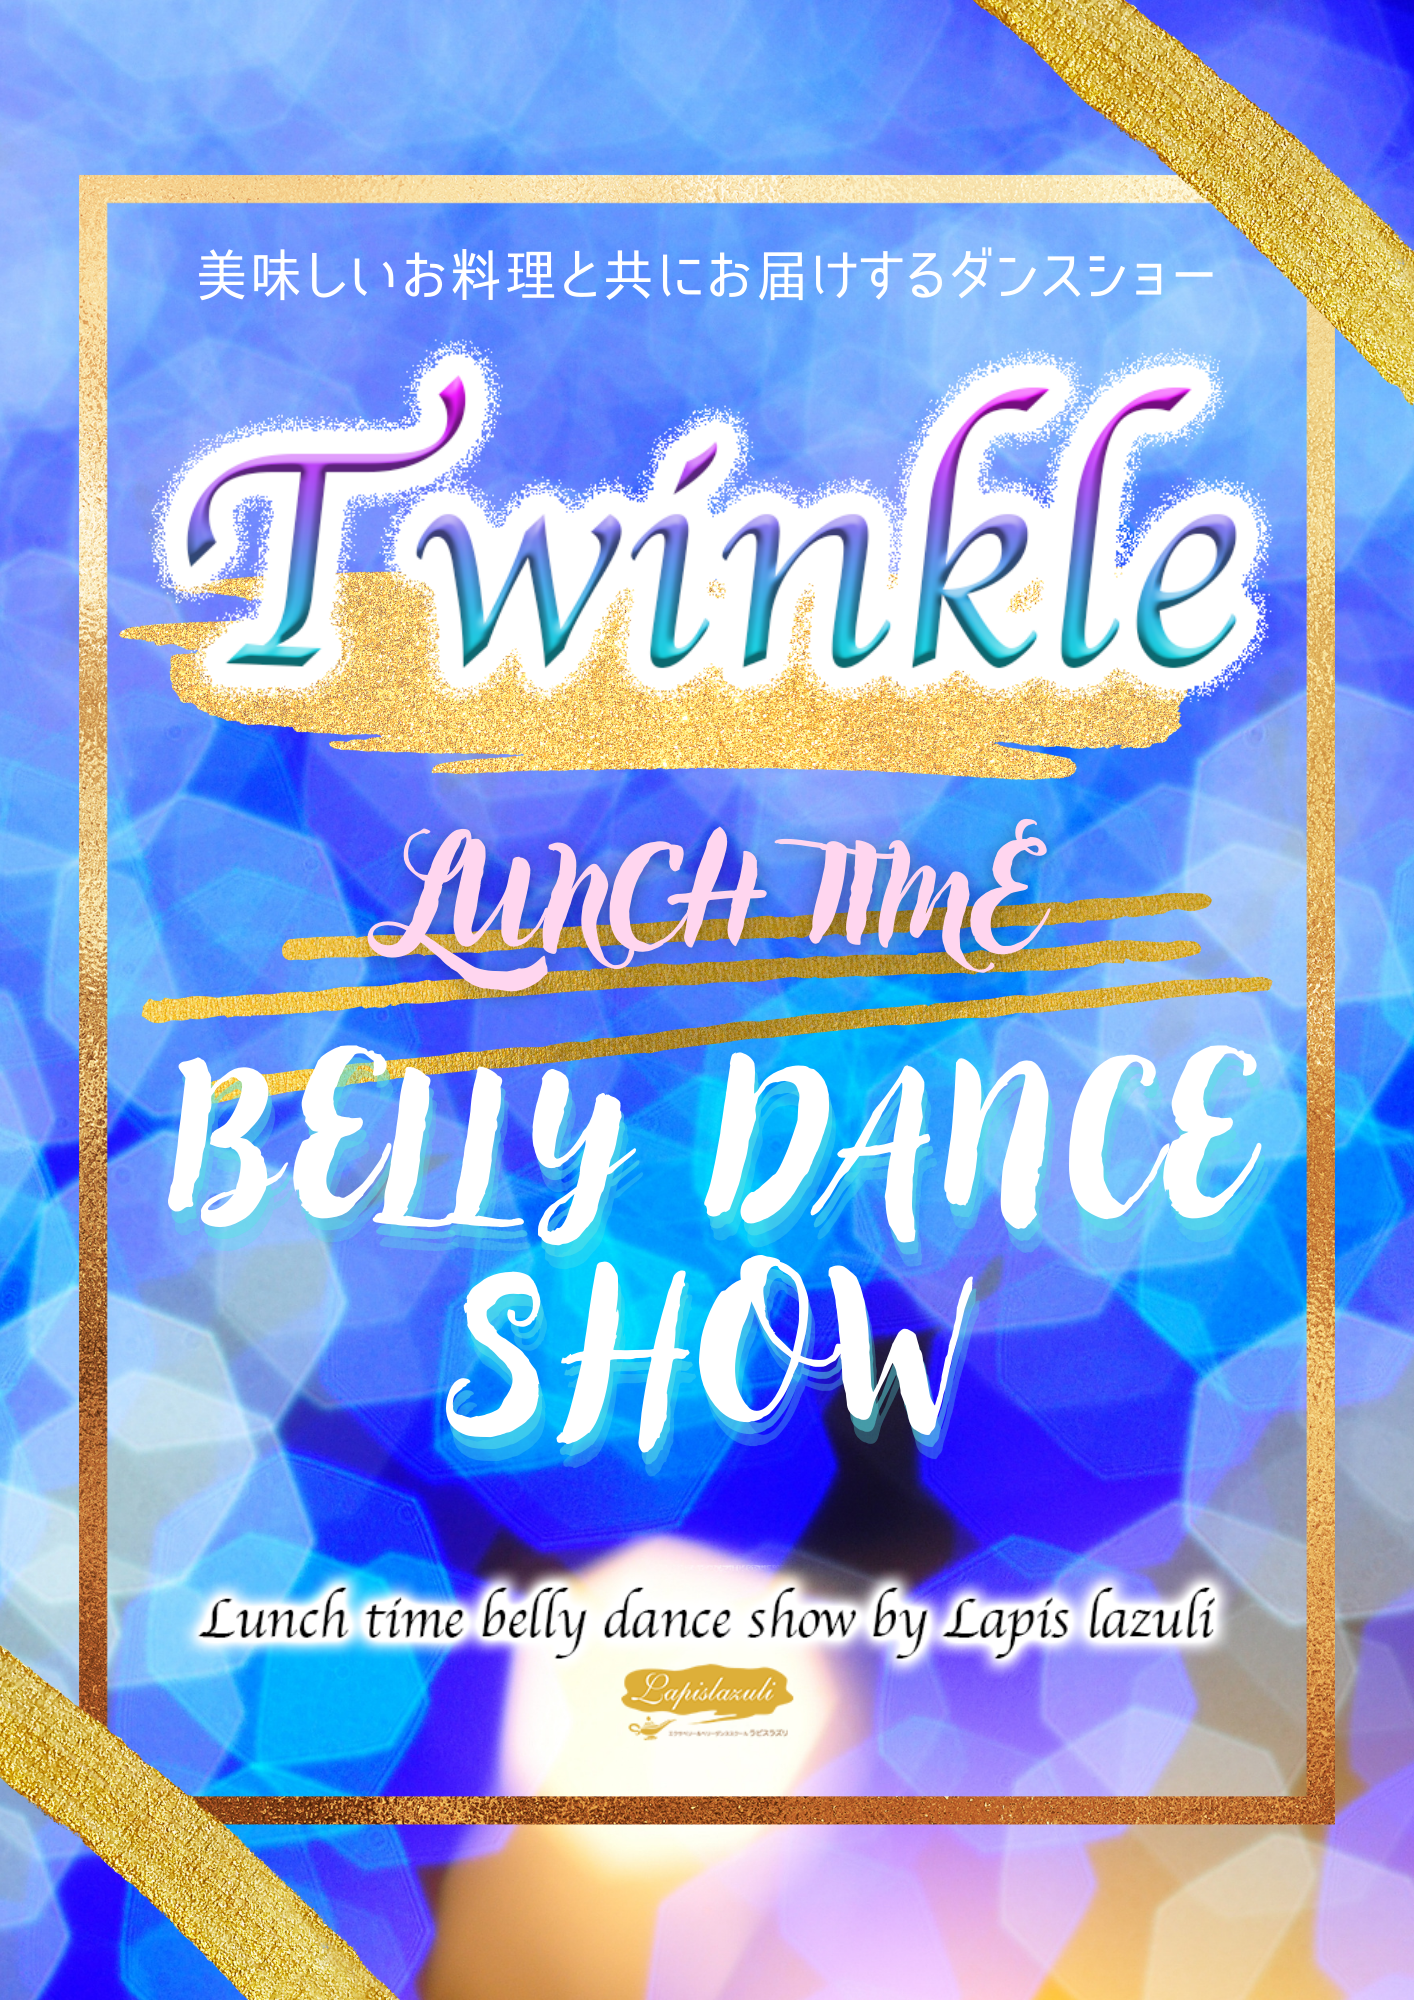 名古屋ランチタイムベリーダンスショー「Twinkle」 定期ショー・毎月開催中